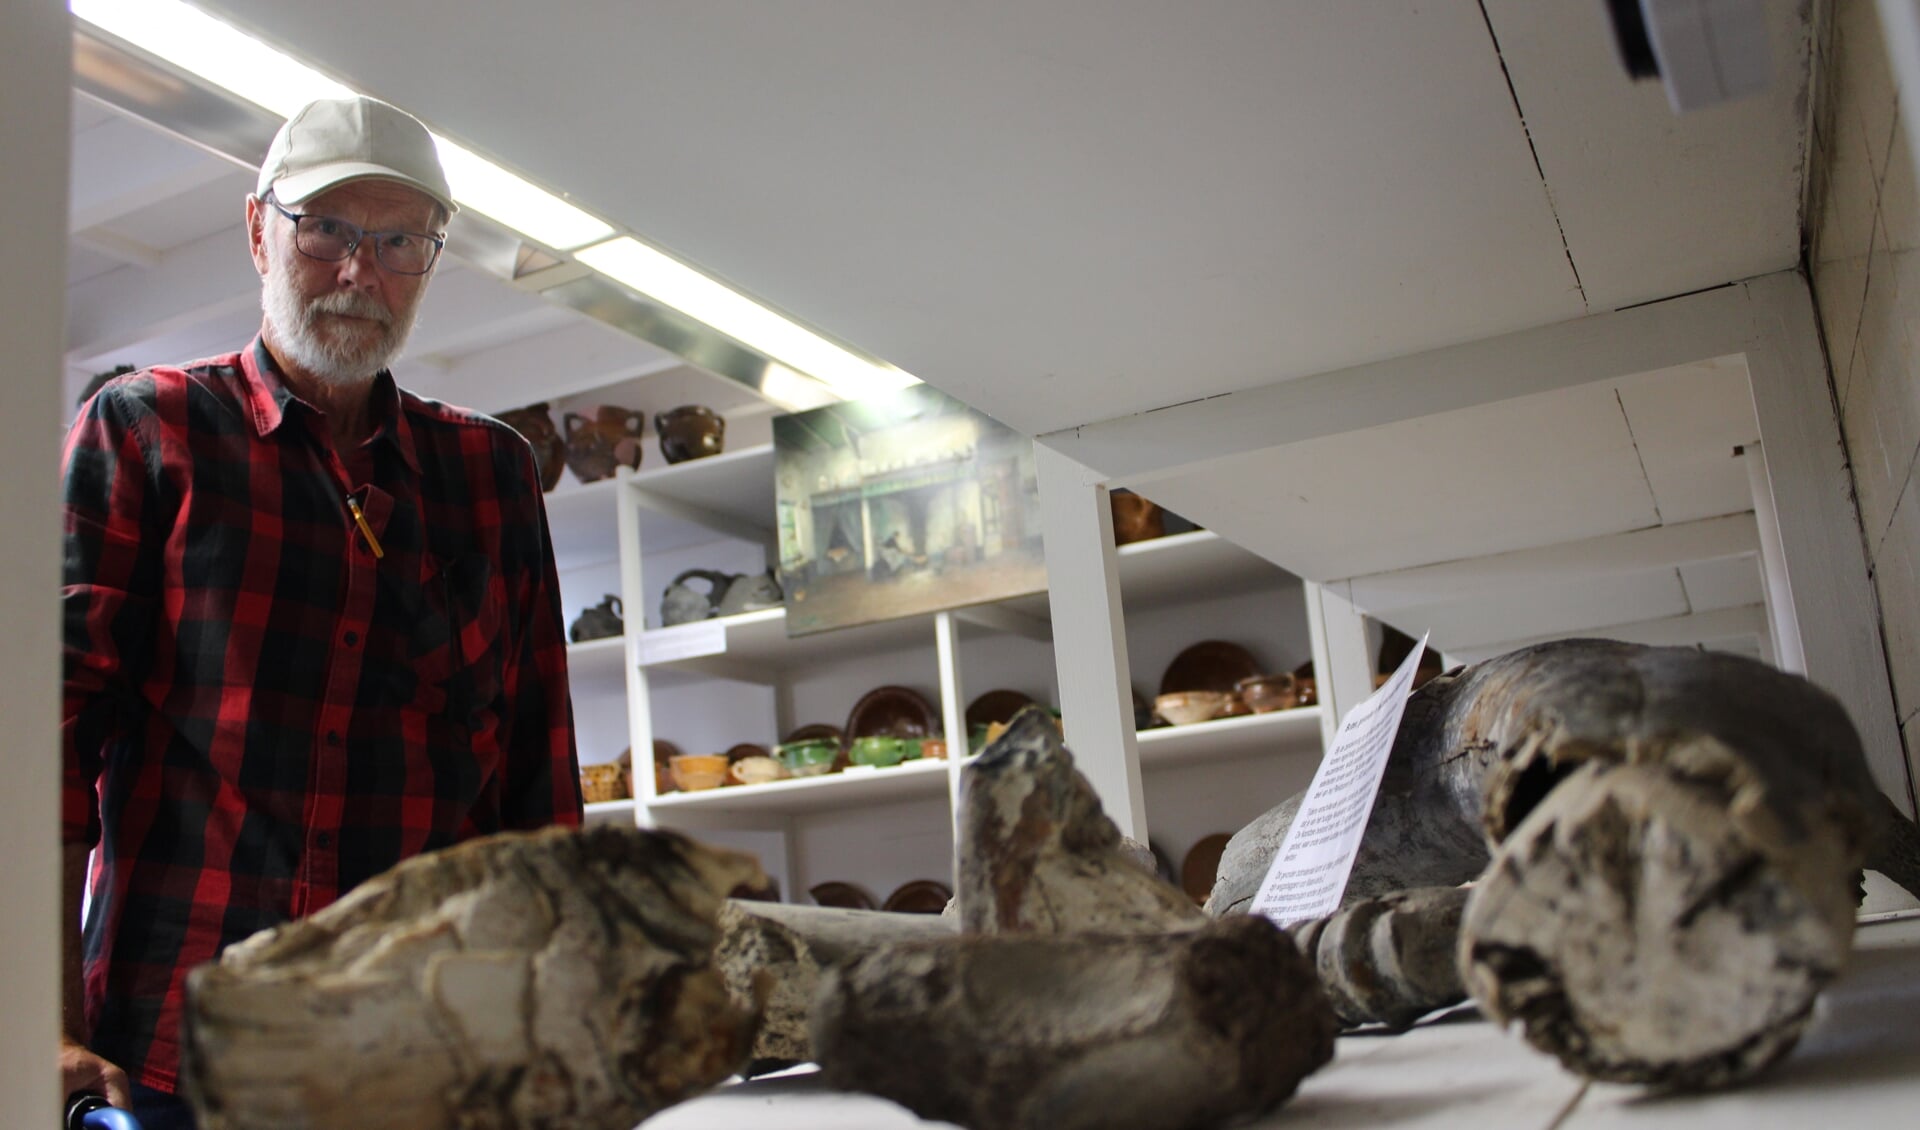 Secretaris/penningmeester Chris Duijvestijn bij de Mammoetbotten die zo'n 11.500 jaar oud zijn